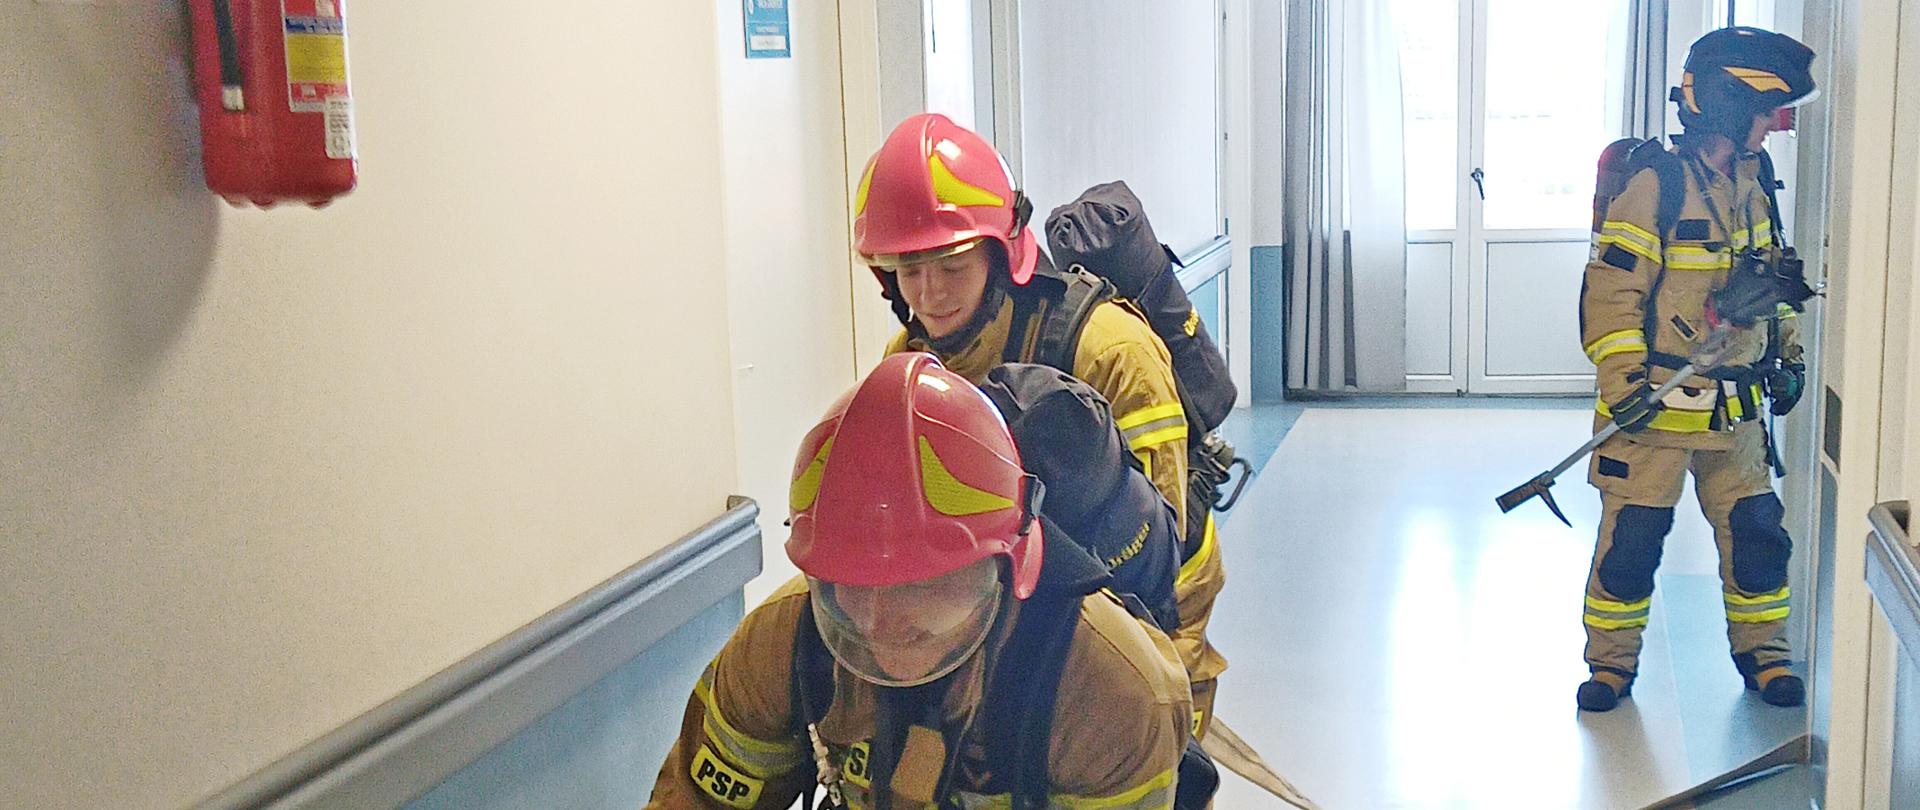 Sprawdzenie organizacji i warunków ewakuacji w budynku Szpitala Powiatowego w Sokołowie Podlaskim 2023 - strażacy w ubraniu specjalnym prowadzą rozwinięcie w budynku szpitala